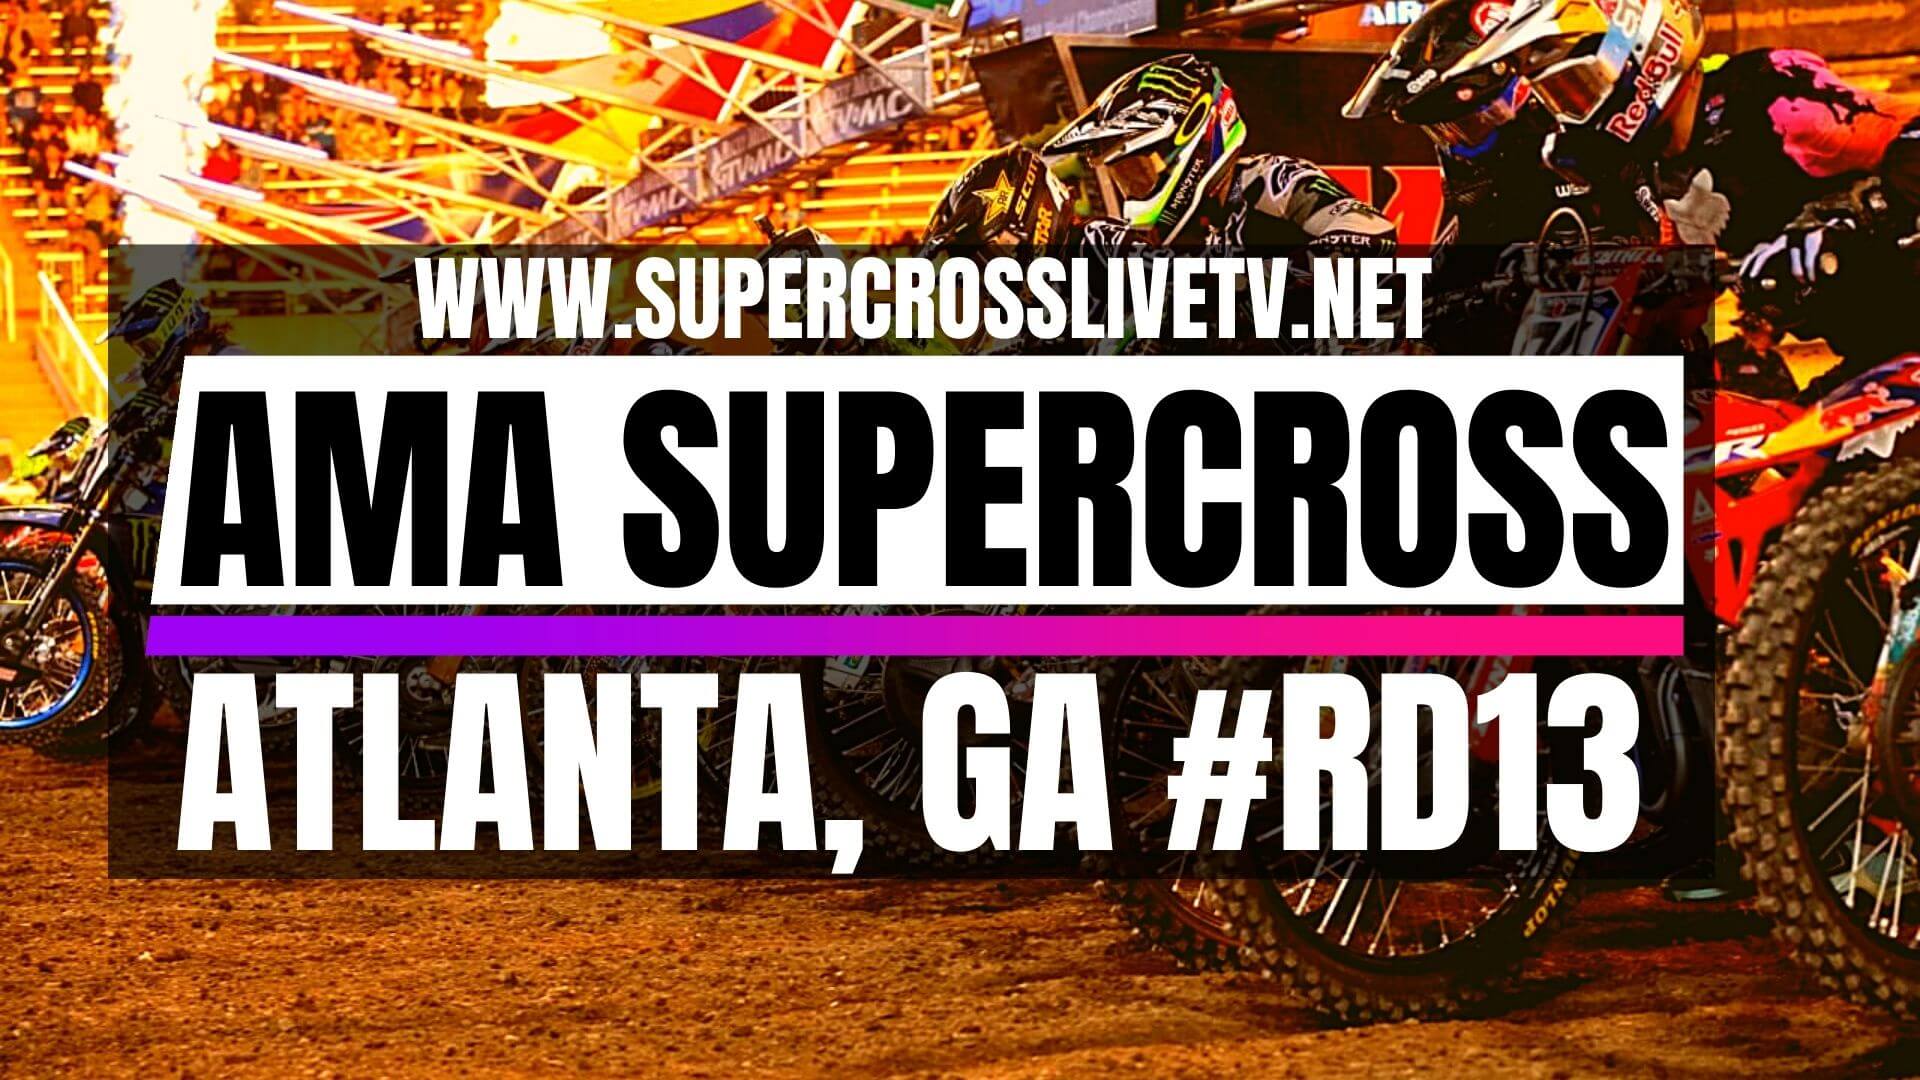 Atlanta Live Stream AMA Supercross TV